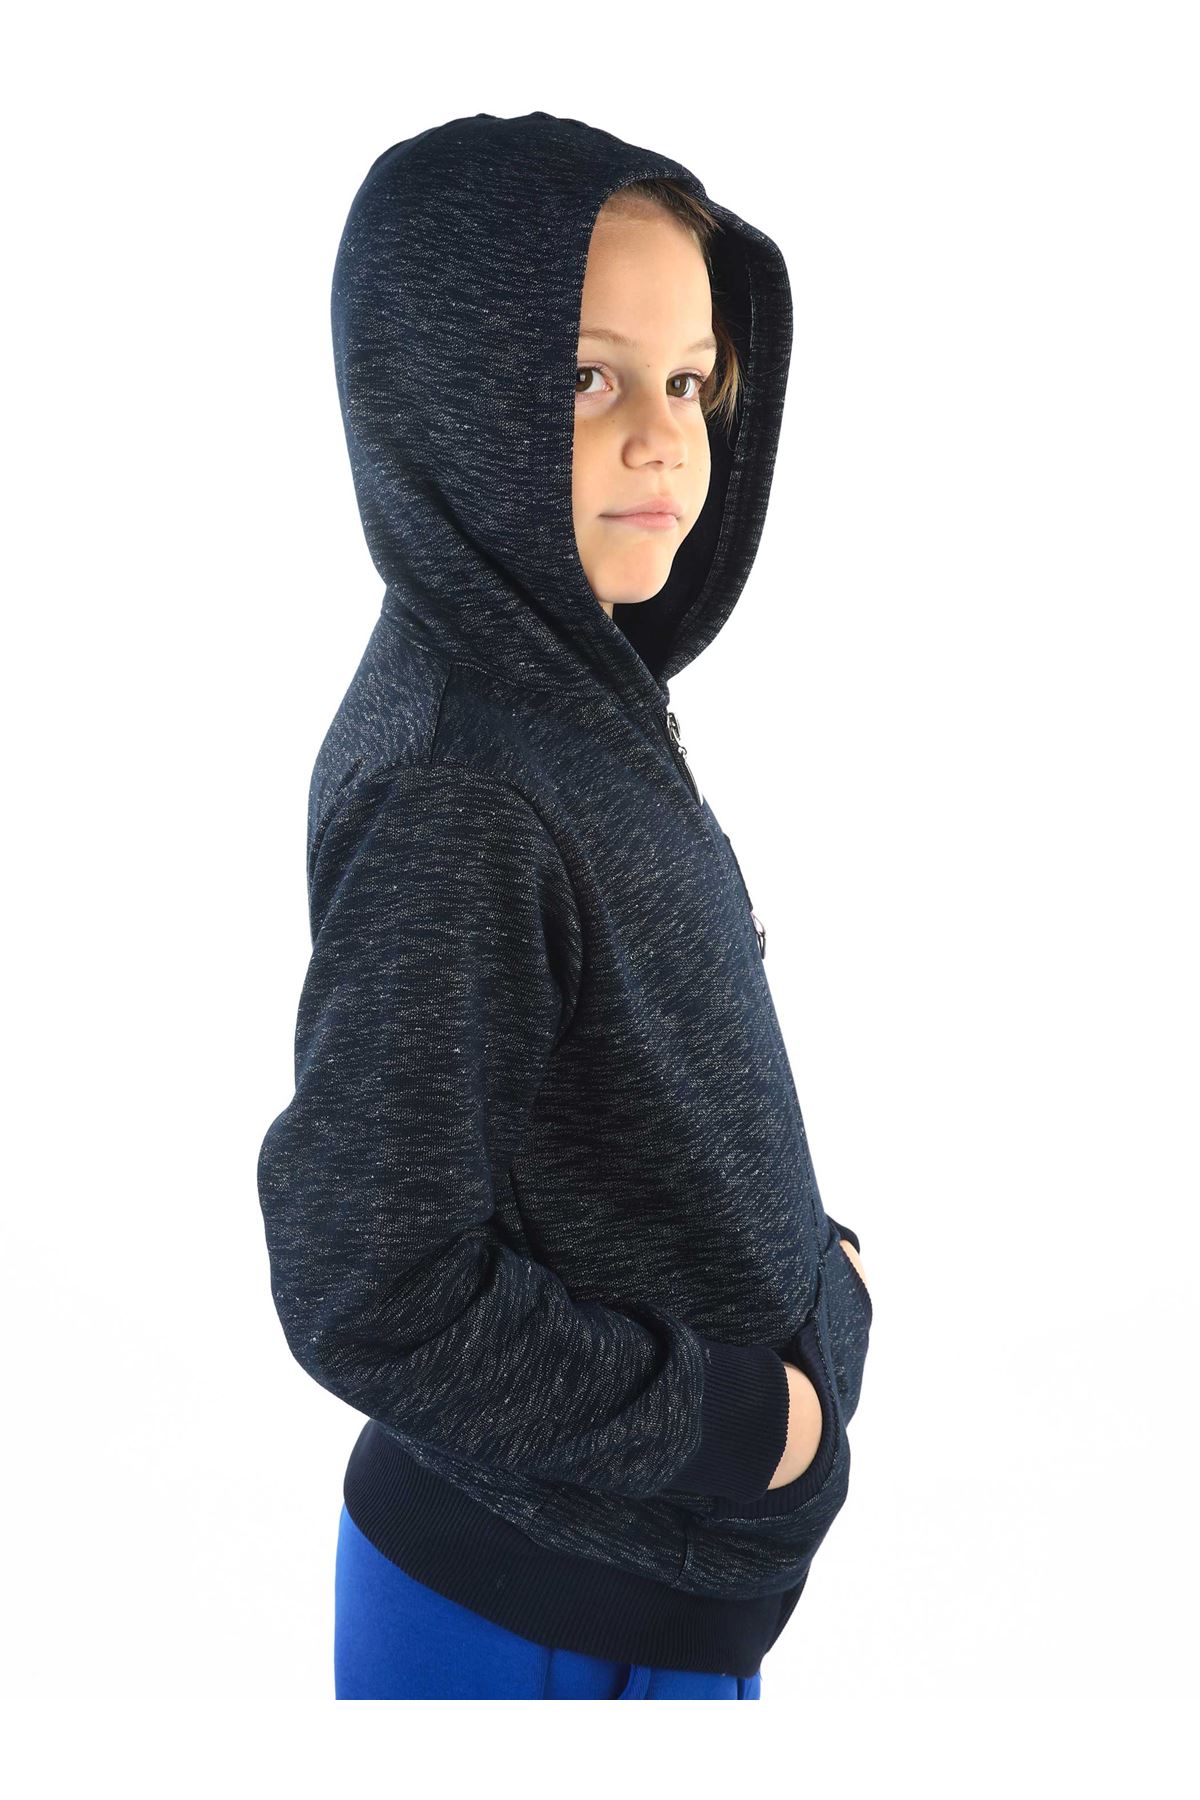 Dark Dark Blue Winter Male Child Jacket